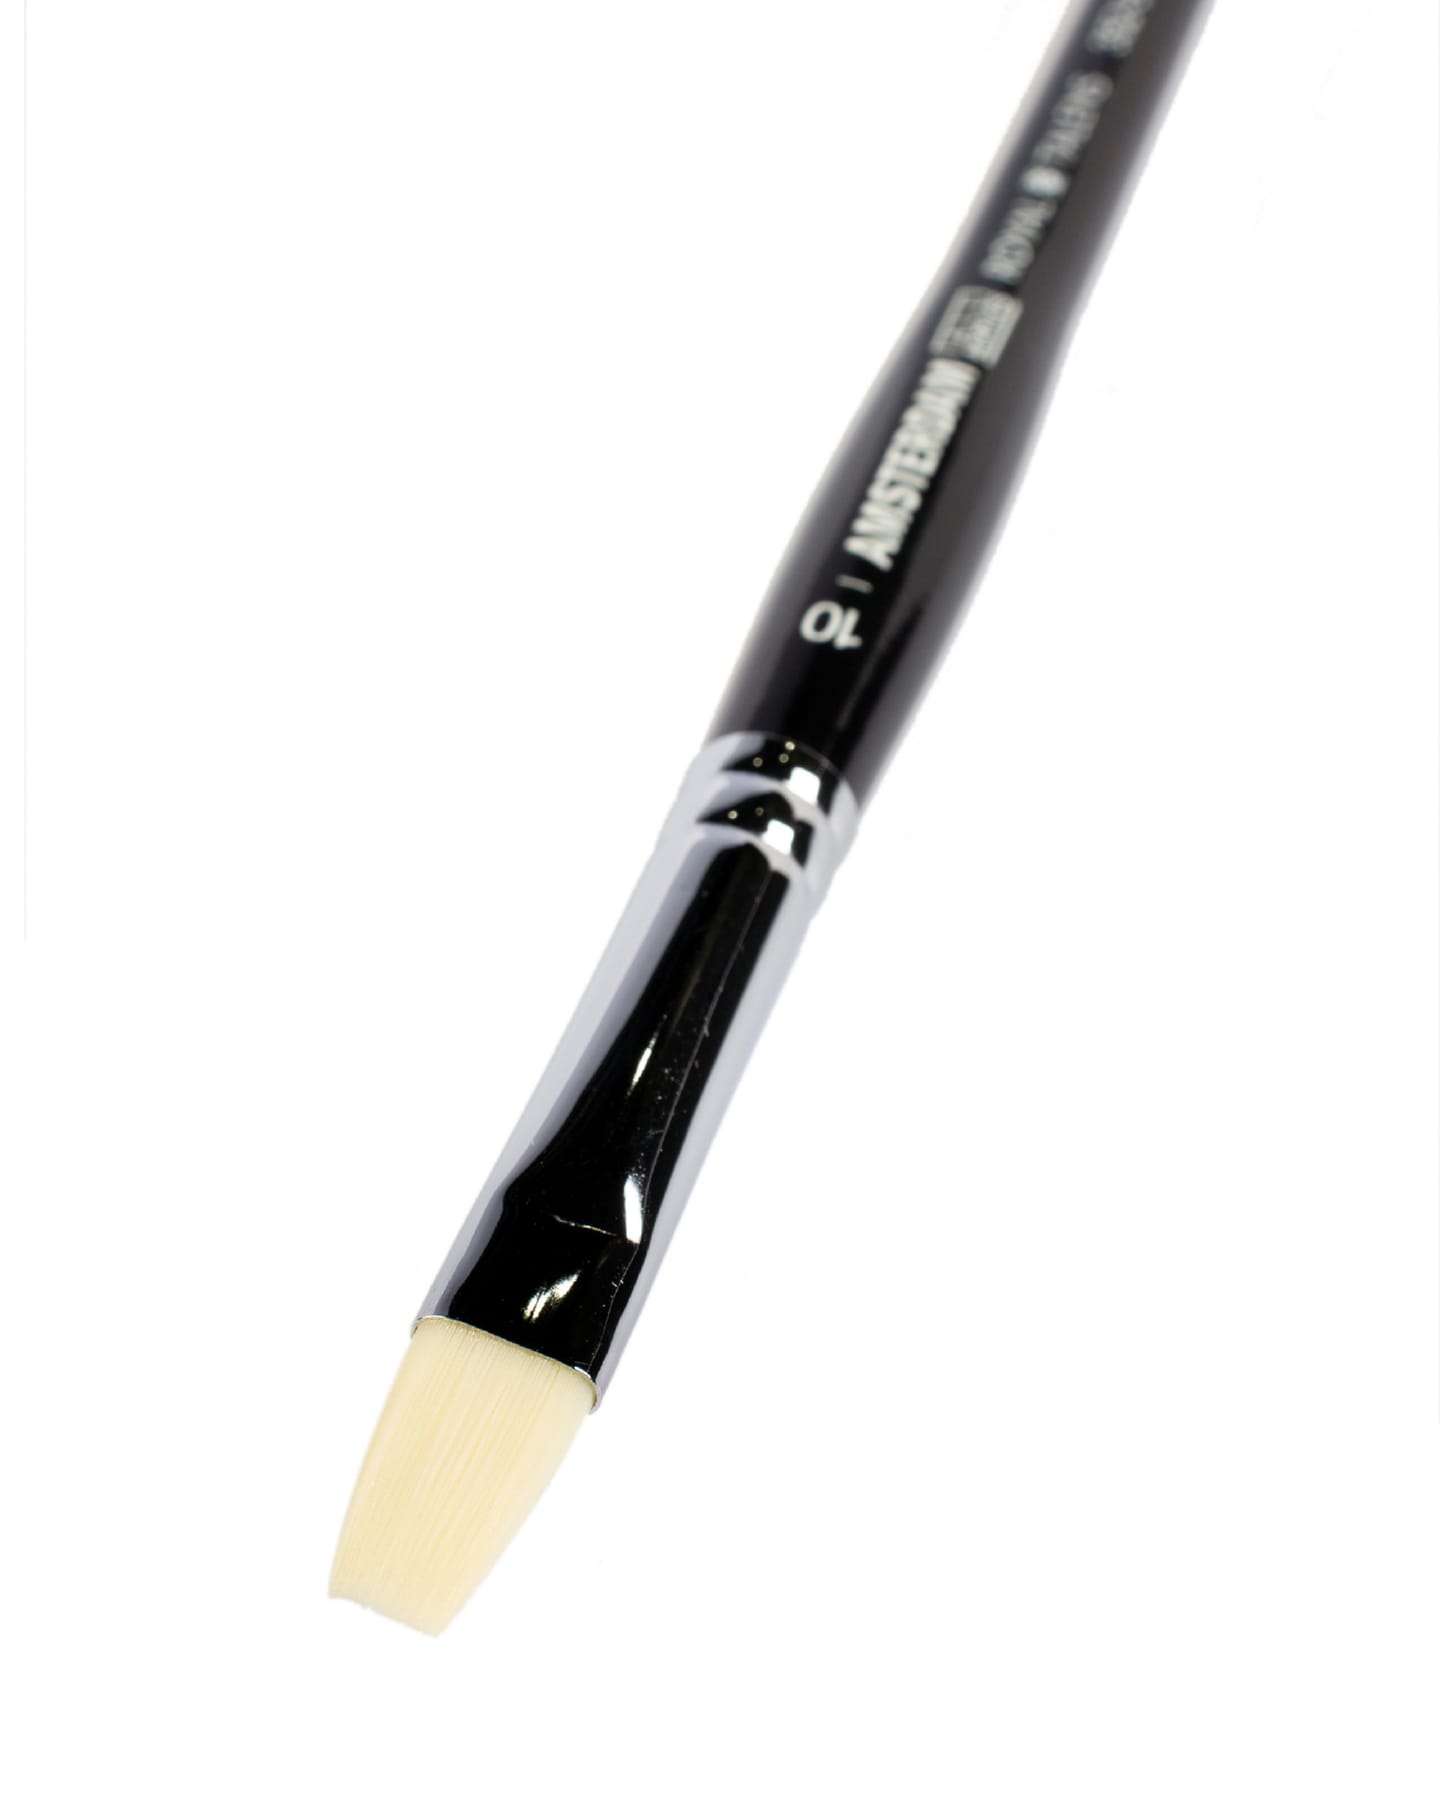 Кисть для акрила Amsterdam 352 жесткая синтетика плоская ручка короткая 5 шт/упак 9 размеров в ассортименте